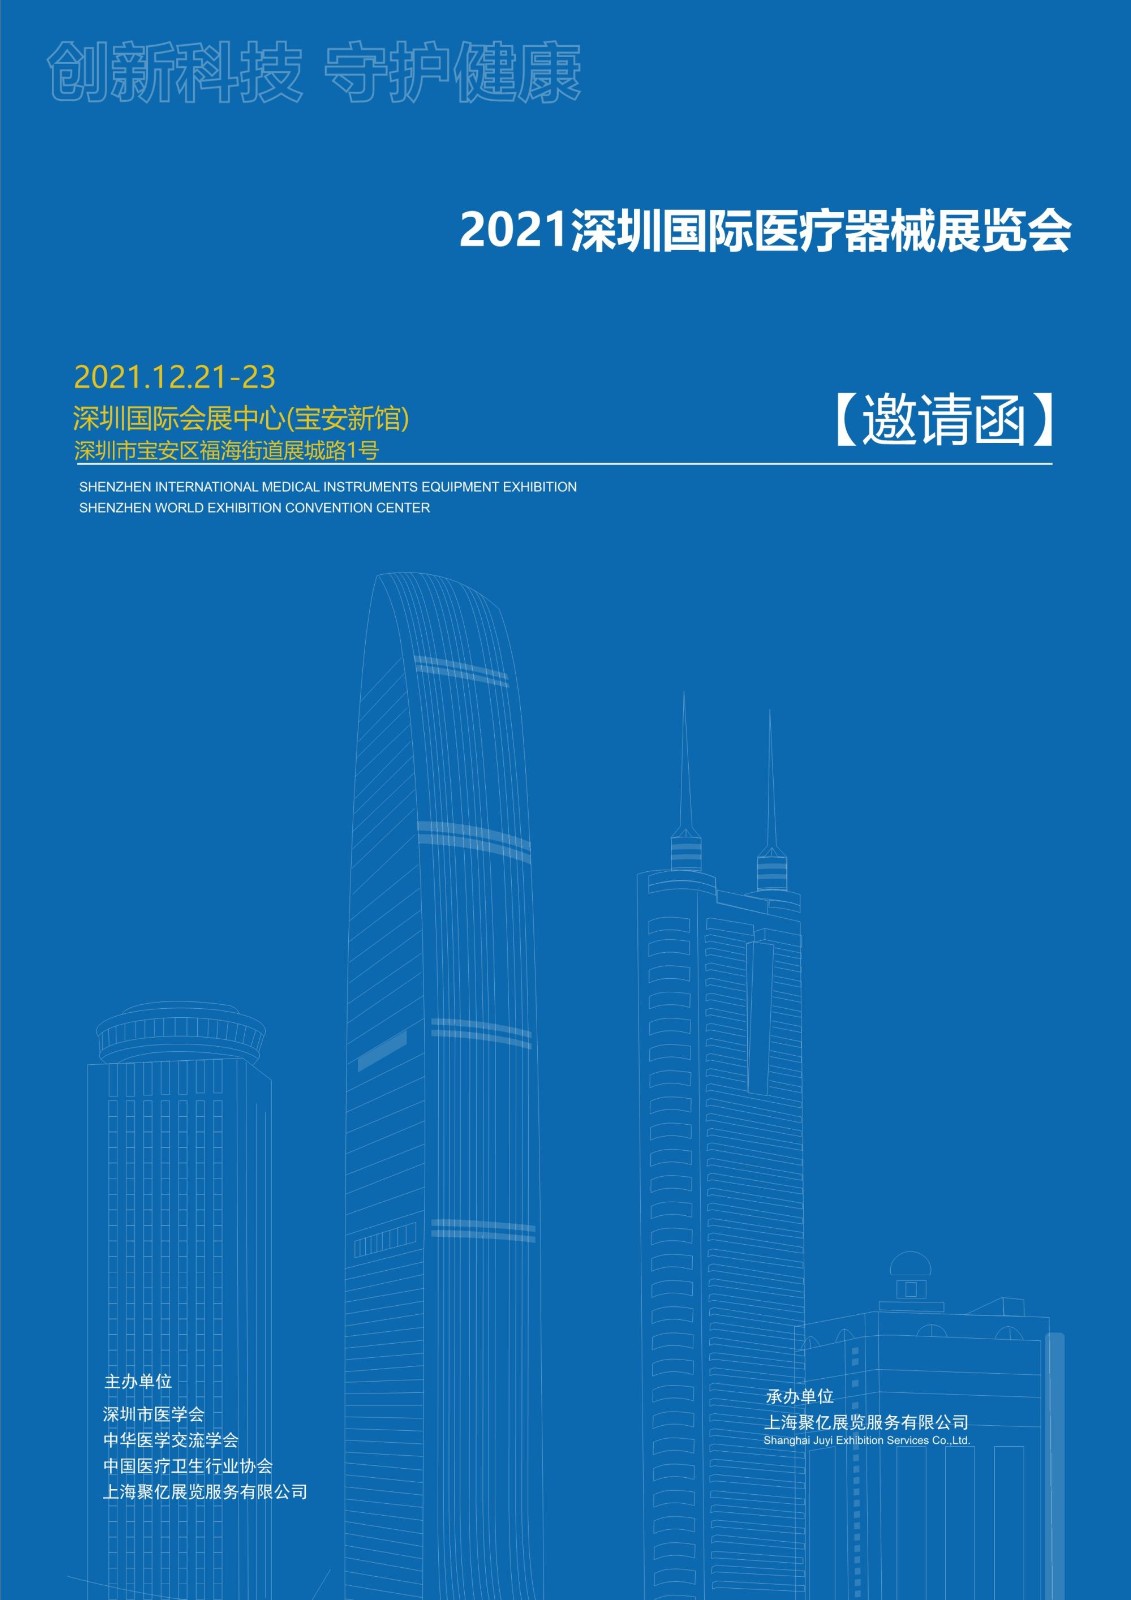 深圳医博会将于12月21-23日深圳国际会展中心（宝安区）盛大开幕